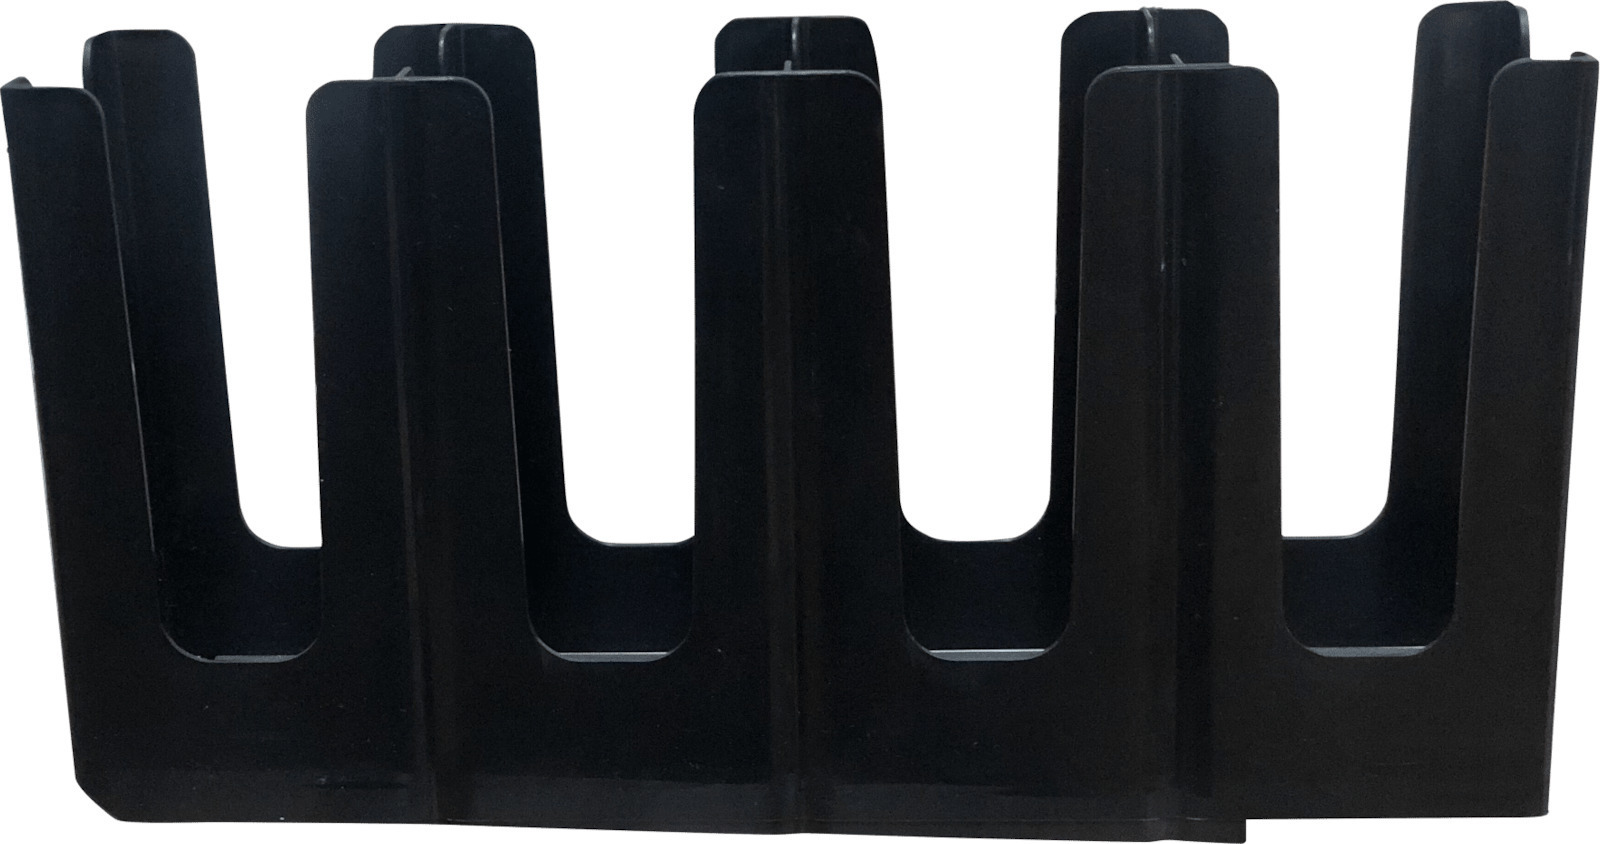 Βάση πλαστική PP 4 θέσεων για ποτήρια και καπάκια κάθετη 43,5x11,5 cm | 22 cm GTSA 79-4031